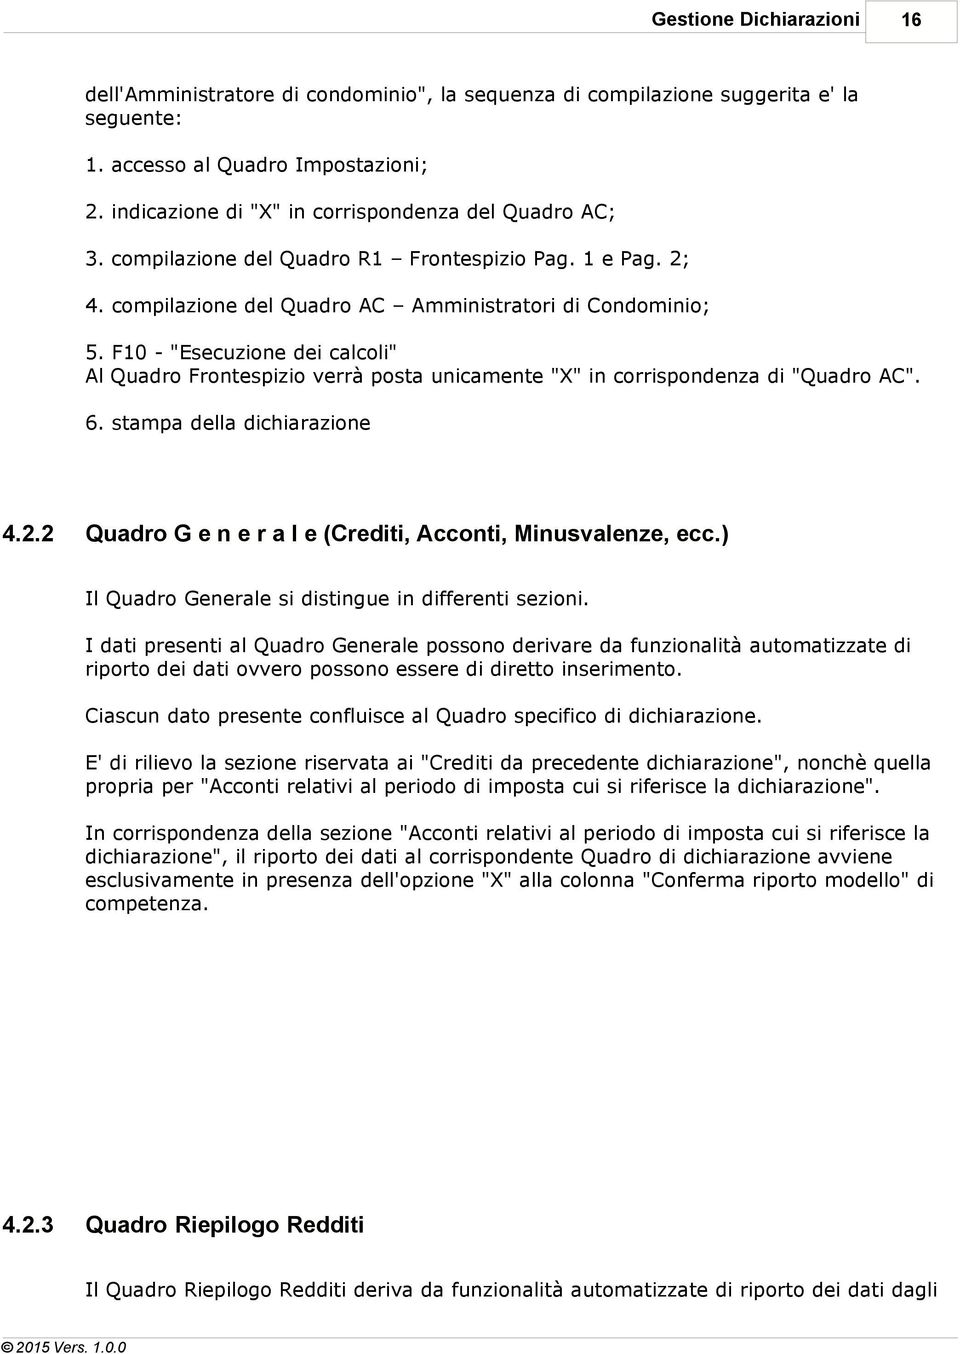 F10 - "Esecuzione dei calcoli" Al Quadro Frontespizio verrà posta unicamente "X" in corrispondenza di "Quadro AC". 6. stampa della dichiarazione 4.2.